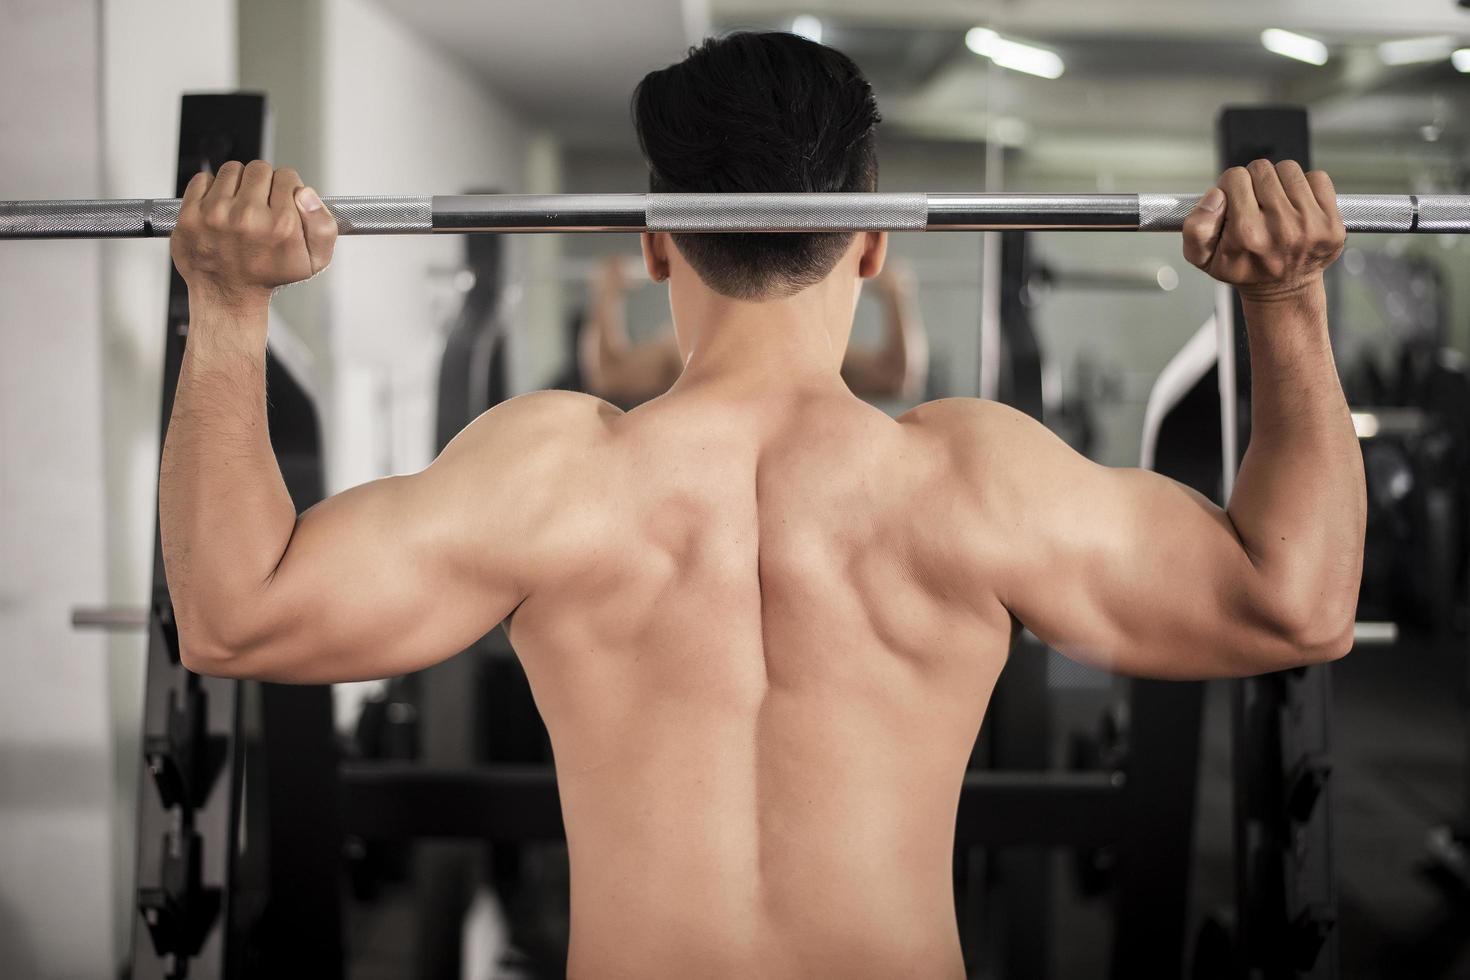 hombre culturista con gran espalda muscular en el gimnasio foto